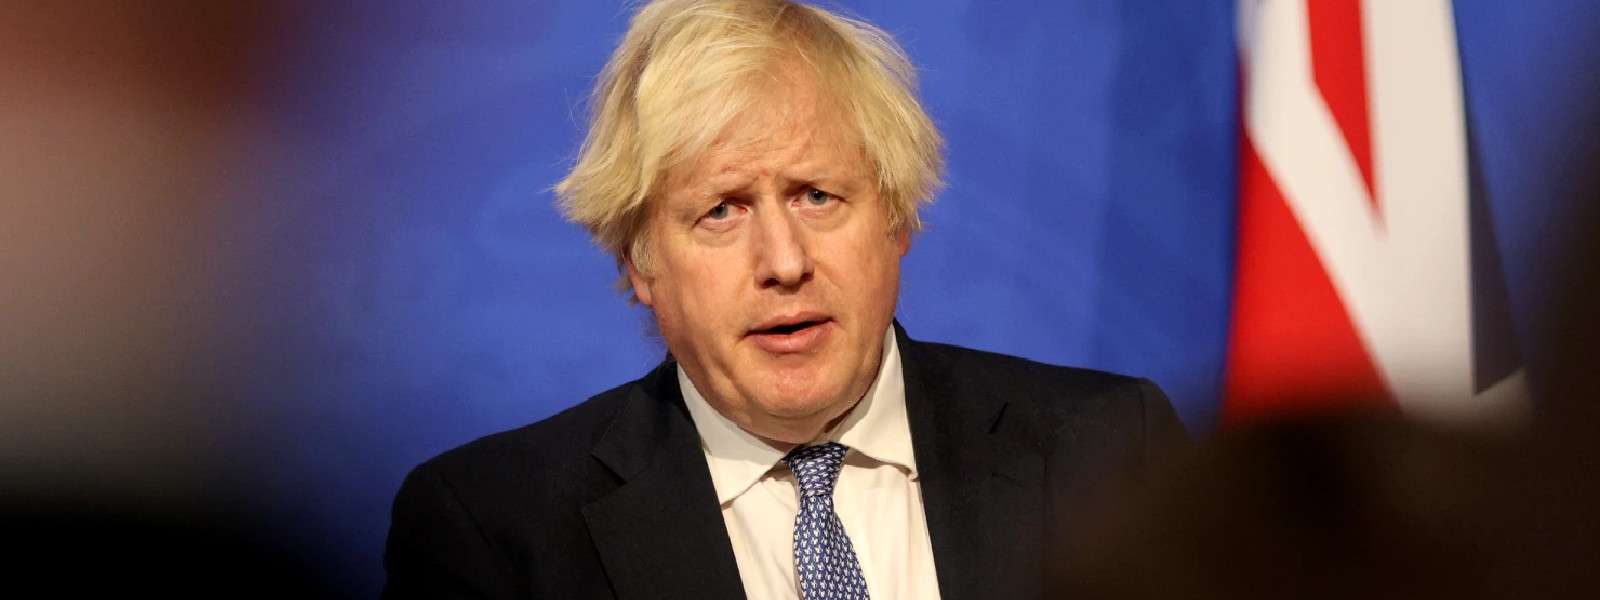 UKs Boris Johnson is facing his biggest crisis